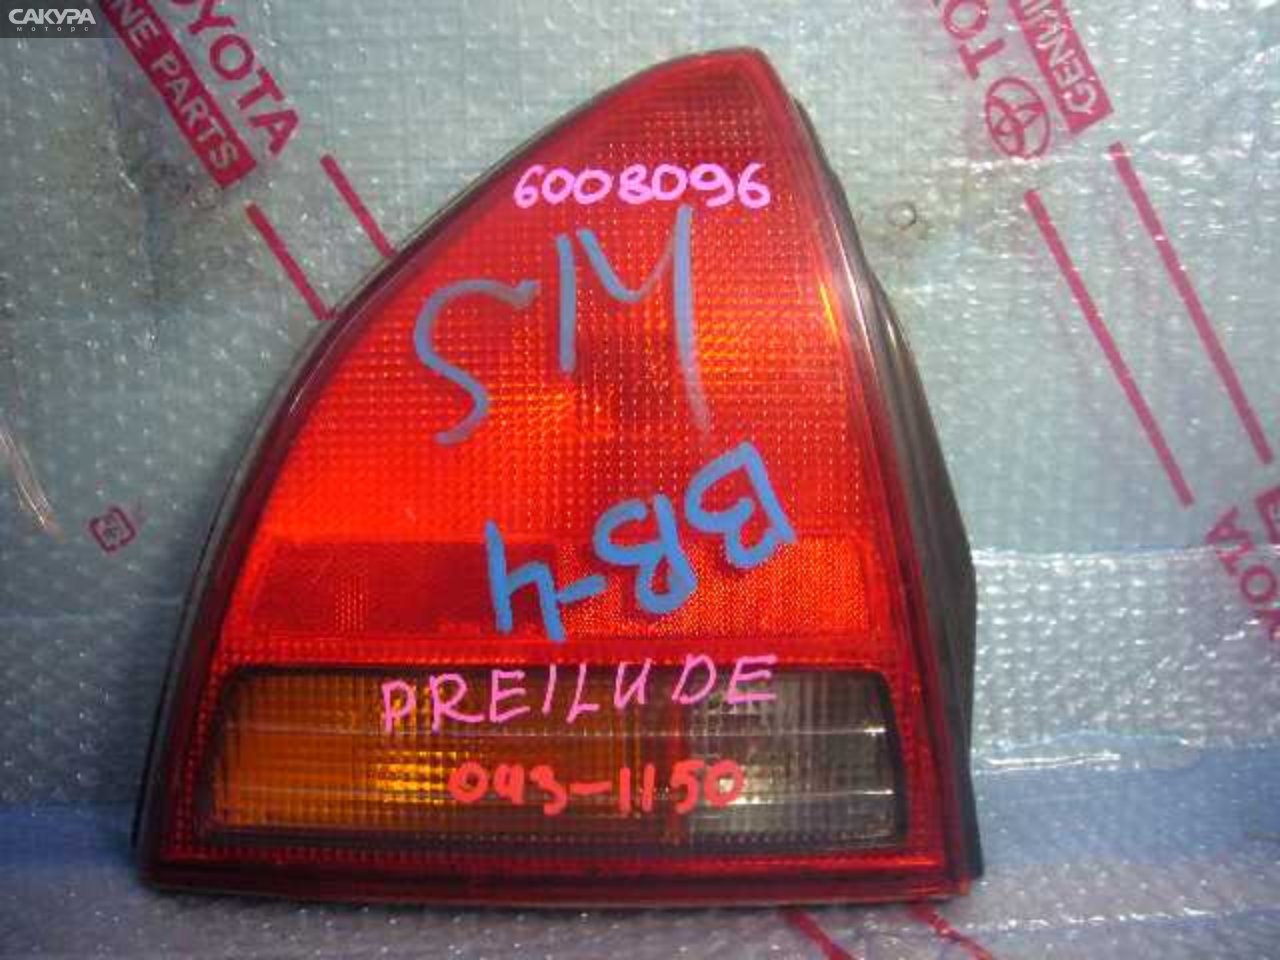 Фонарь стоп-сигнала левый Honda Prelude BB4 043-1150: купить в Сакура Кемерово.